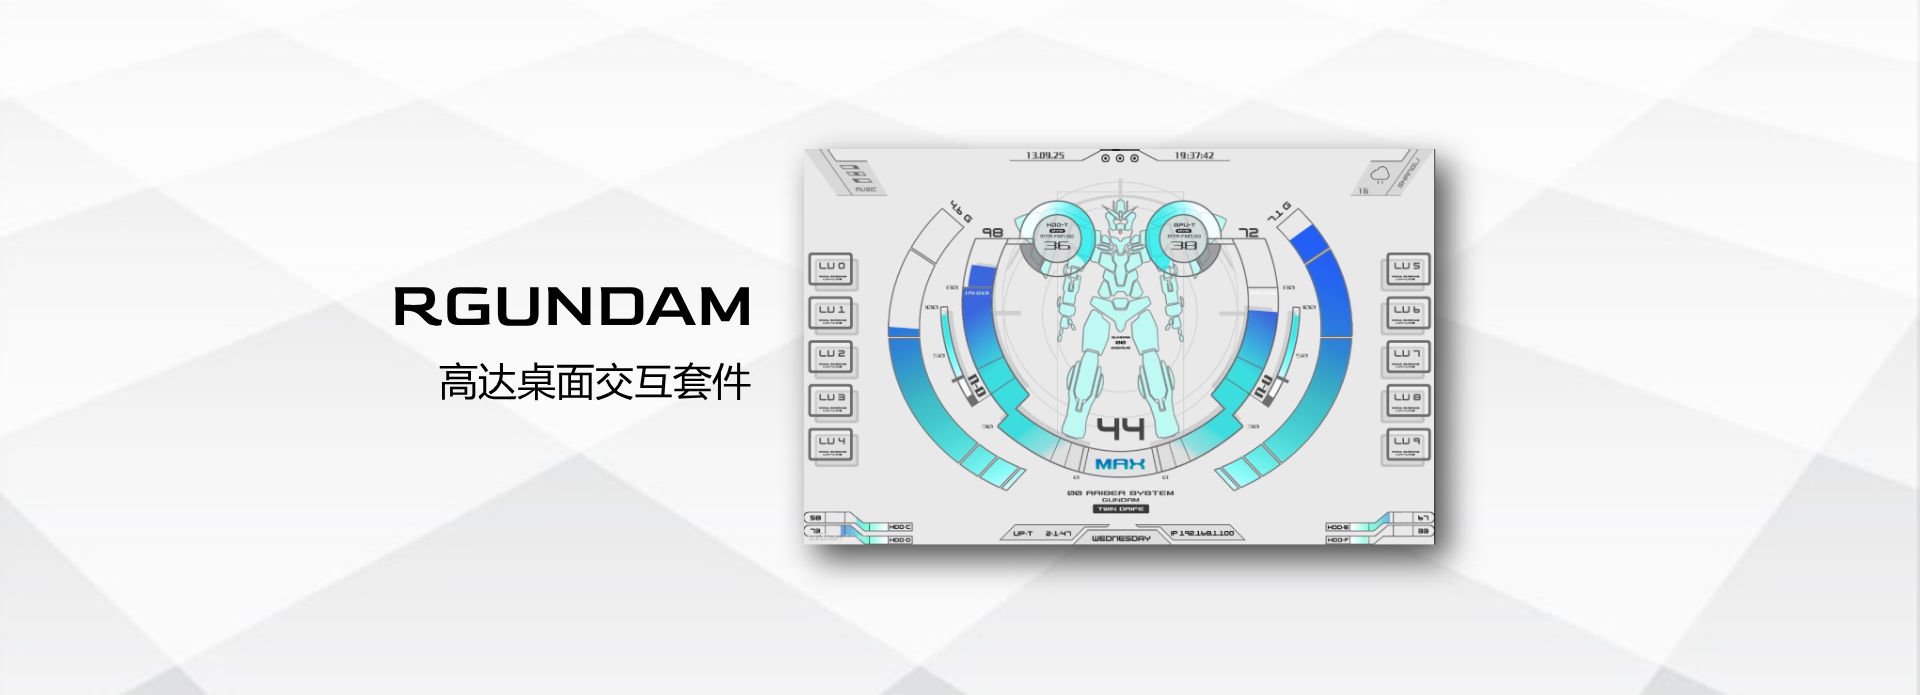 Rainmeter Gundam 桌面插件